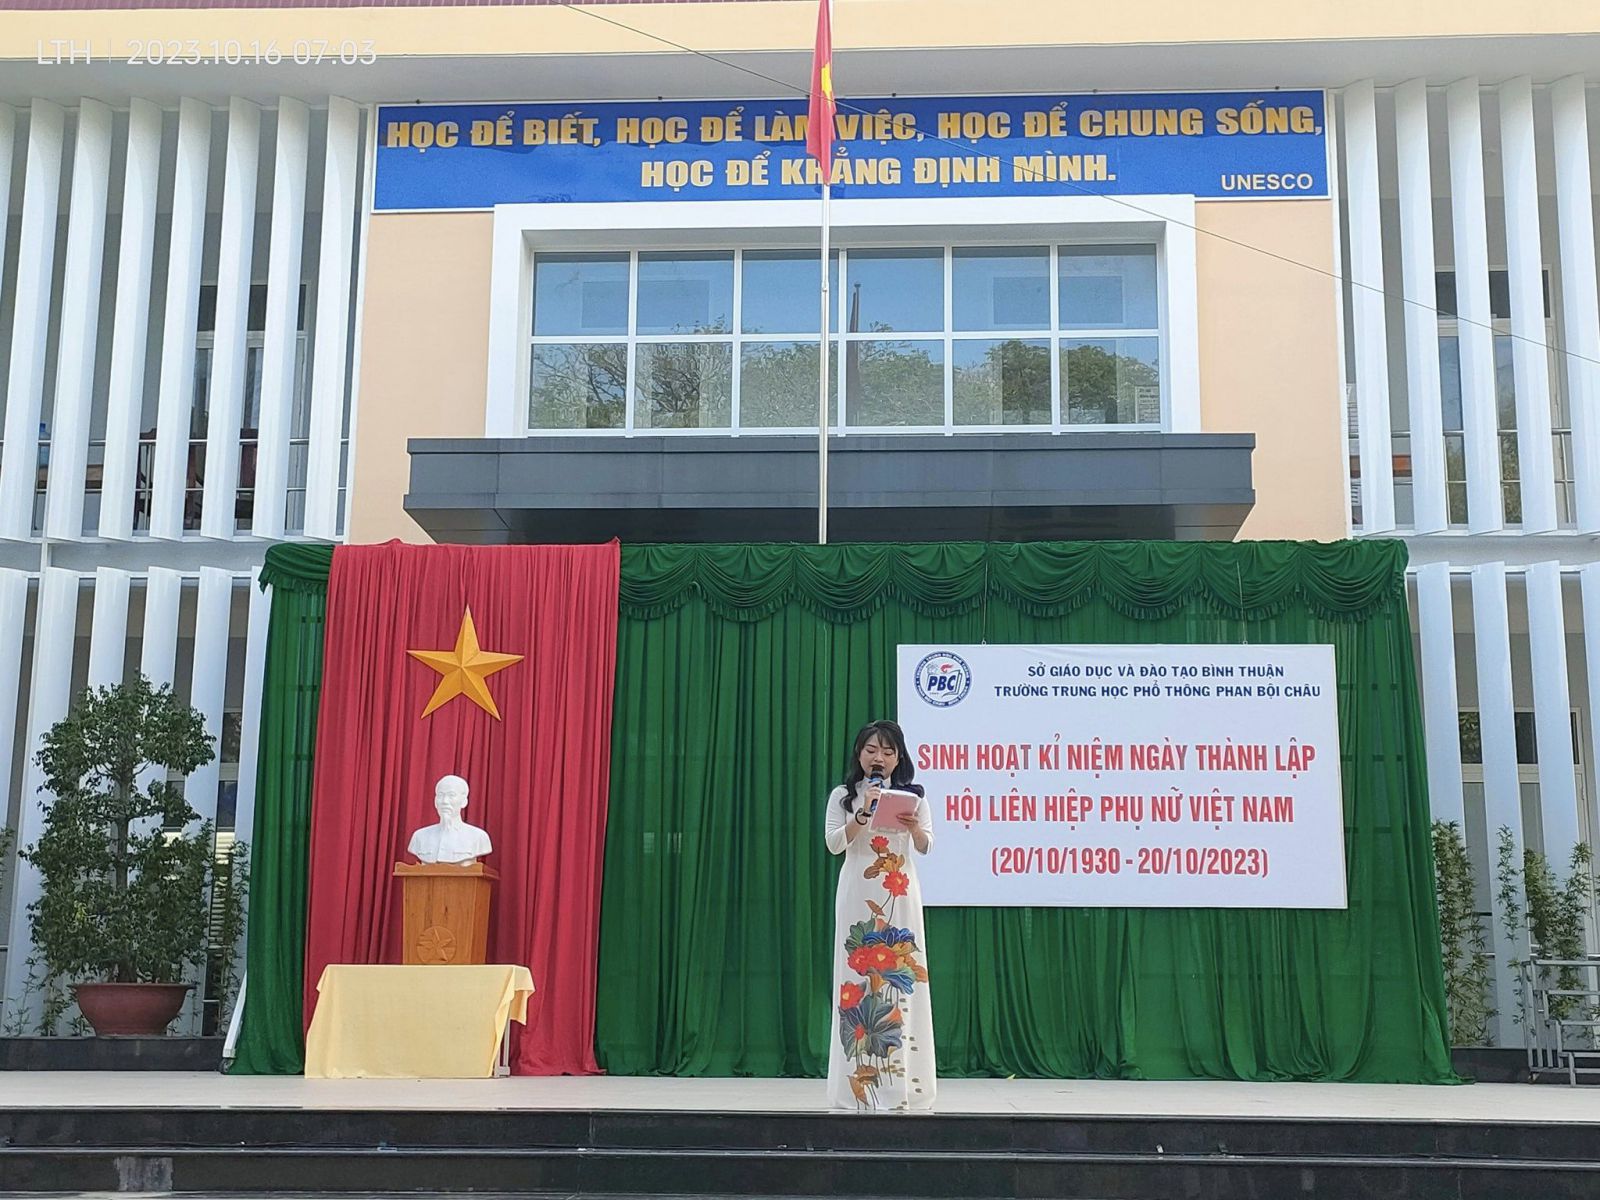 Sinh hoạt chào cờ tuần 7 "Kỉ niệm ngày thành lập Hội liên hiệp phụ nữ Việt Nam 20/10/2023"